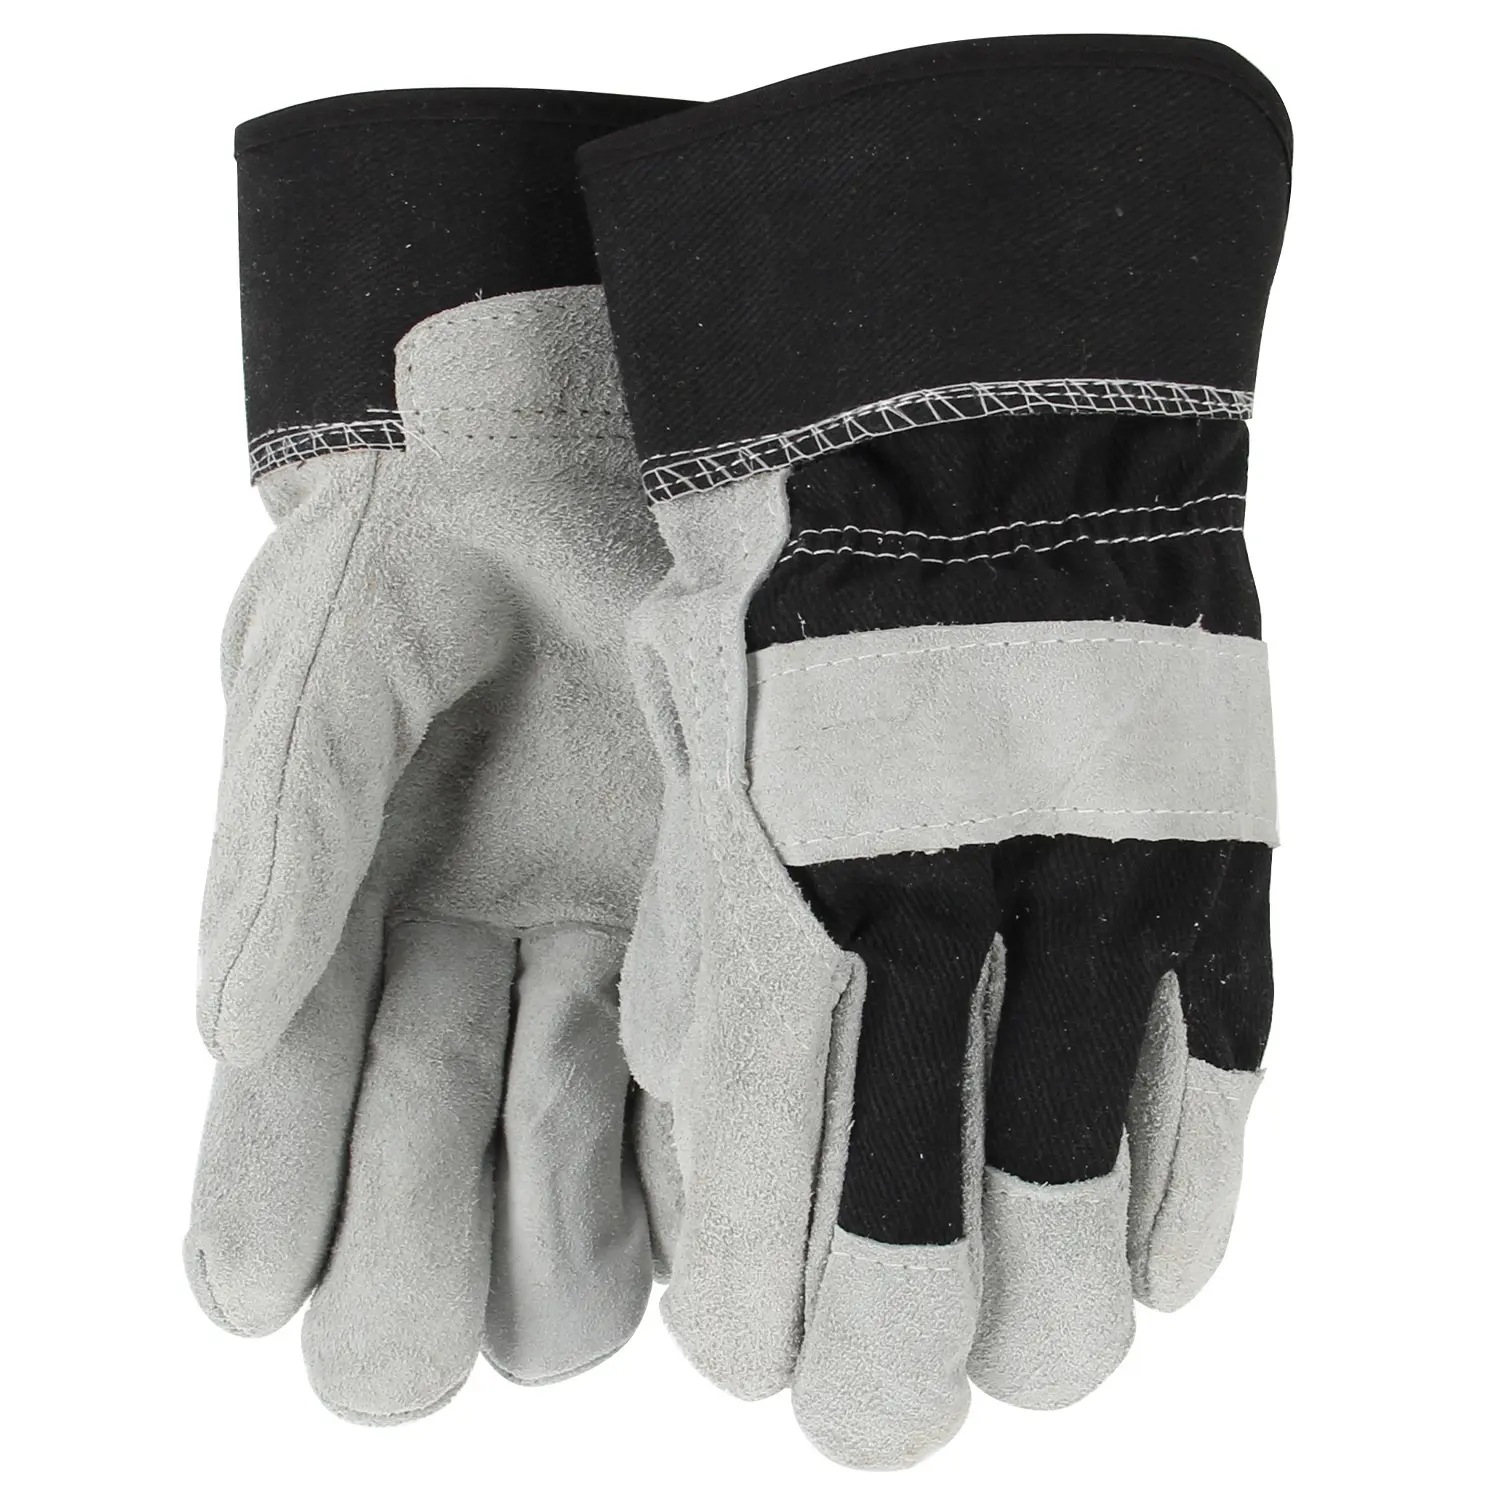 KSEIBI высококачественные кожаные сварочные перчатки #14 белый и черный для защиты от высоких температур.